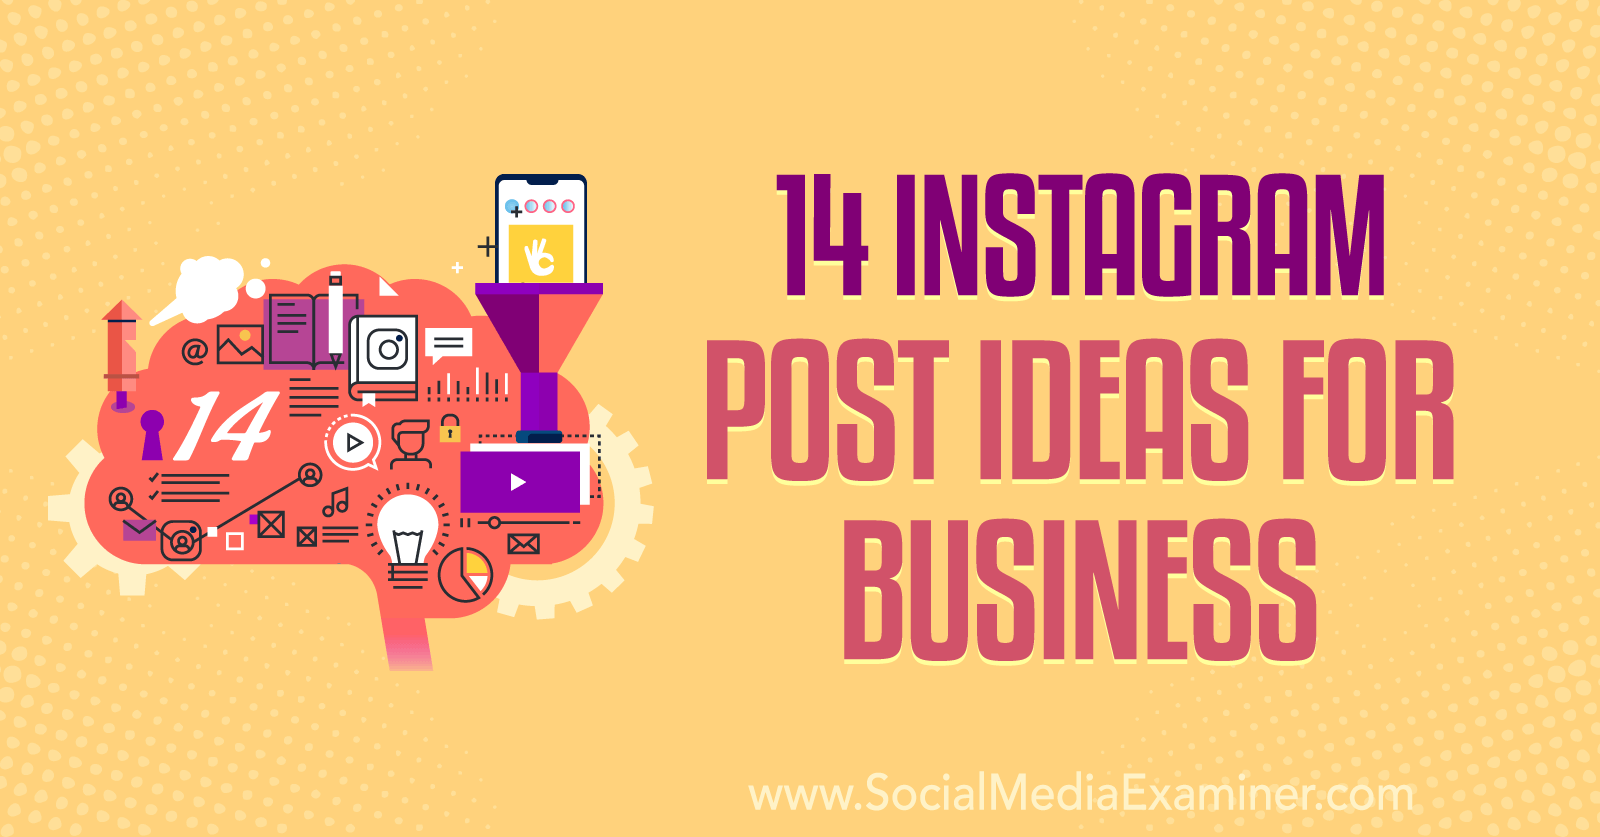 14 Instagram Post Ideas For Business Social Media Examiner